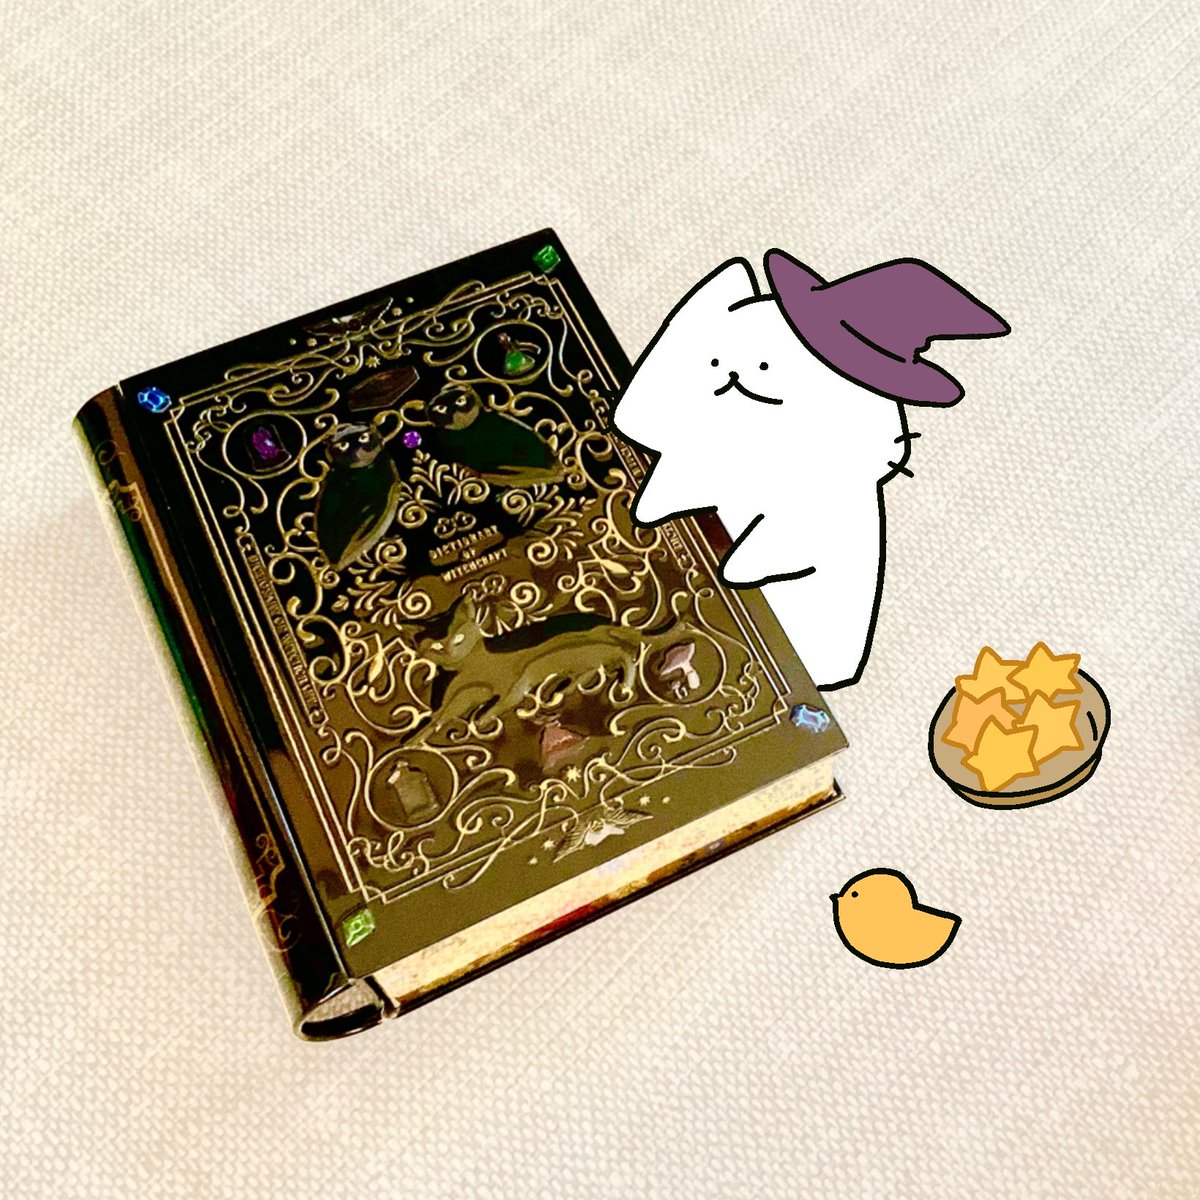 「カルディで魔法辞書を買ってきました勉強しますฅ^•ω•^ฅ 」|猫原のしのイラスト